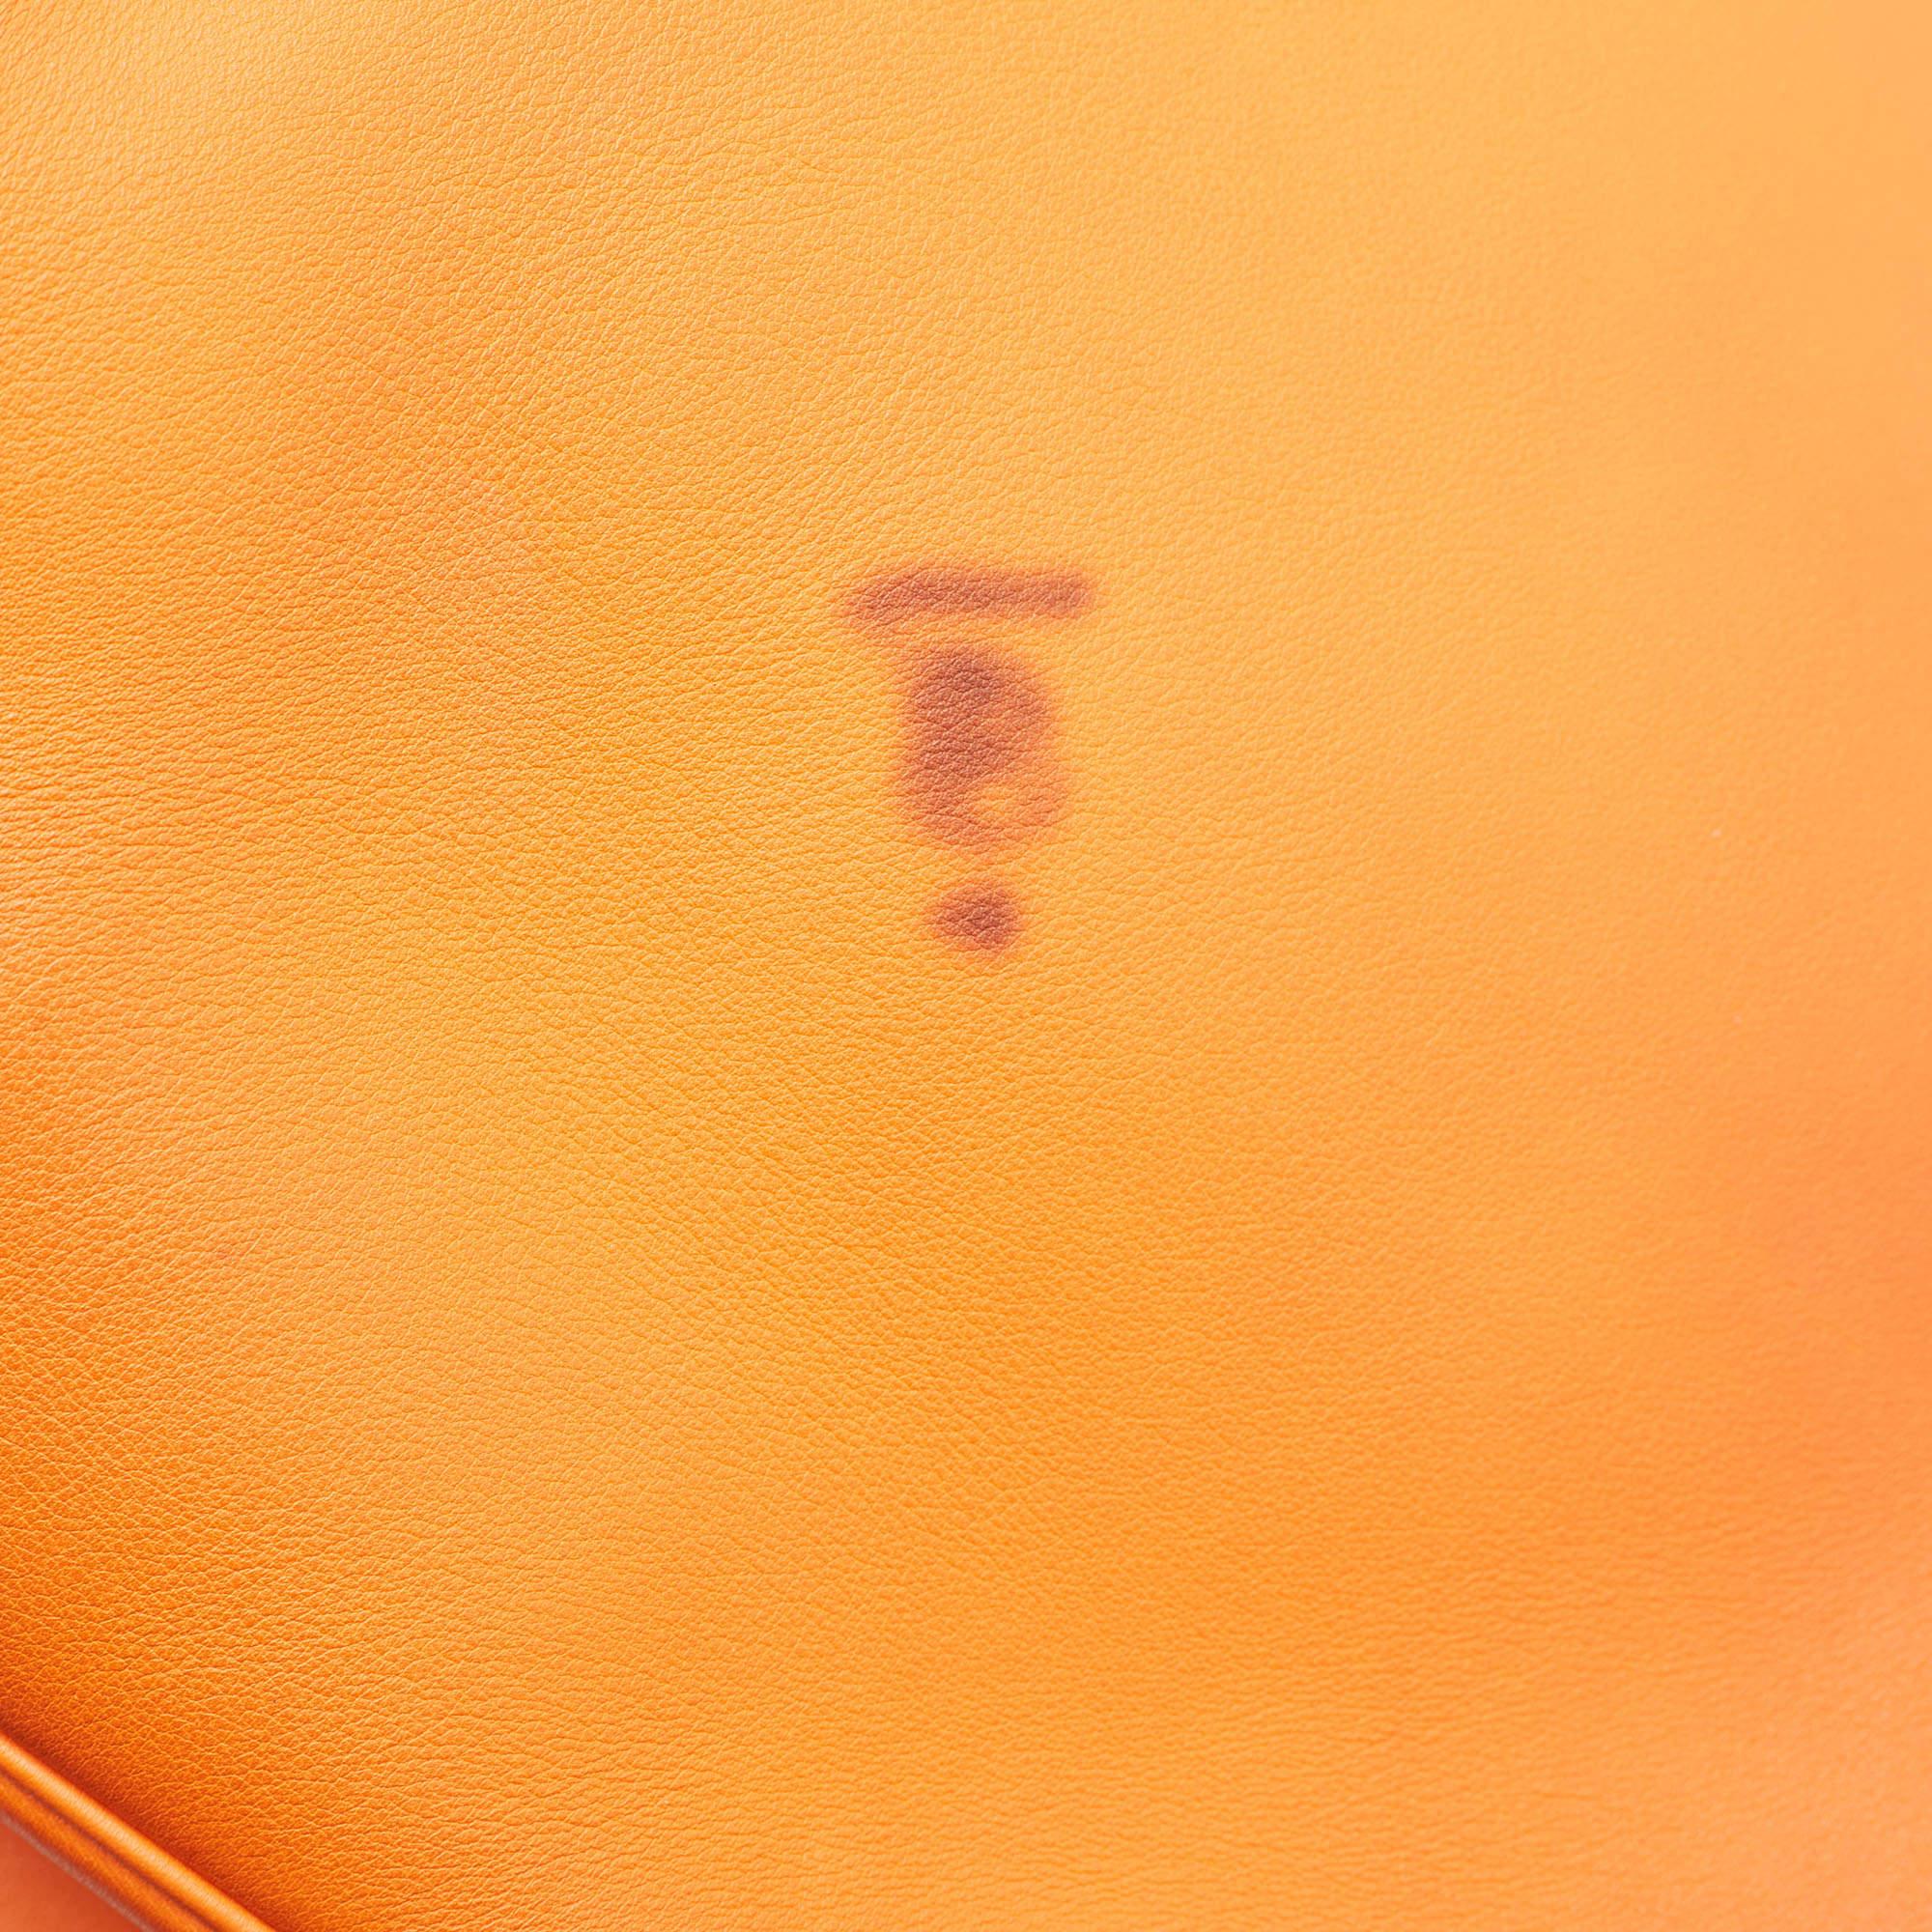 Dior Orange Leather Large Diorissimo Shopper Tote en vente 8